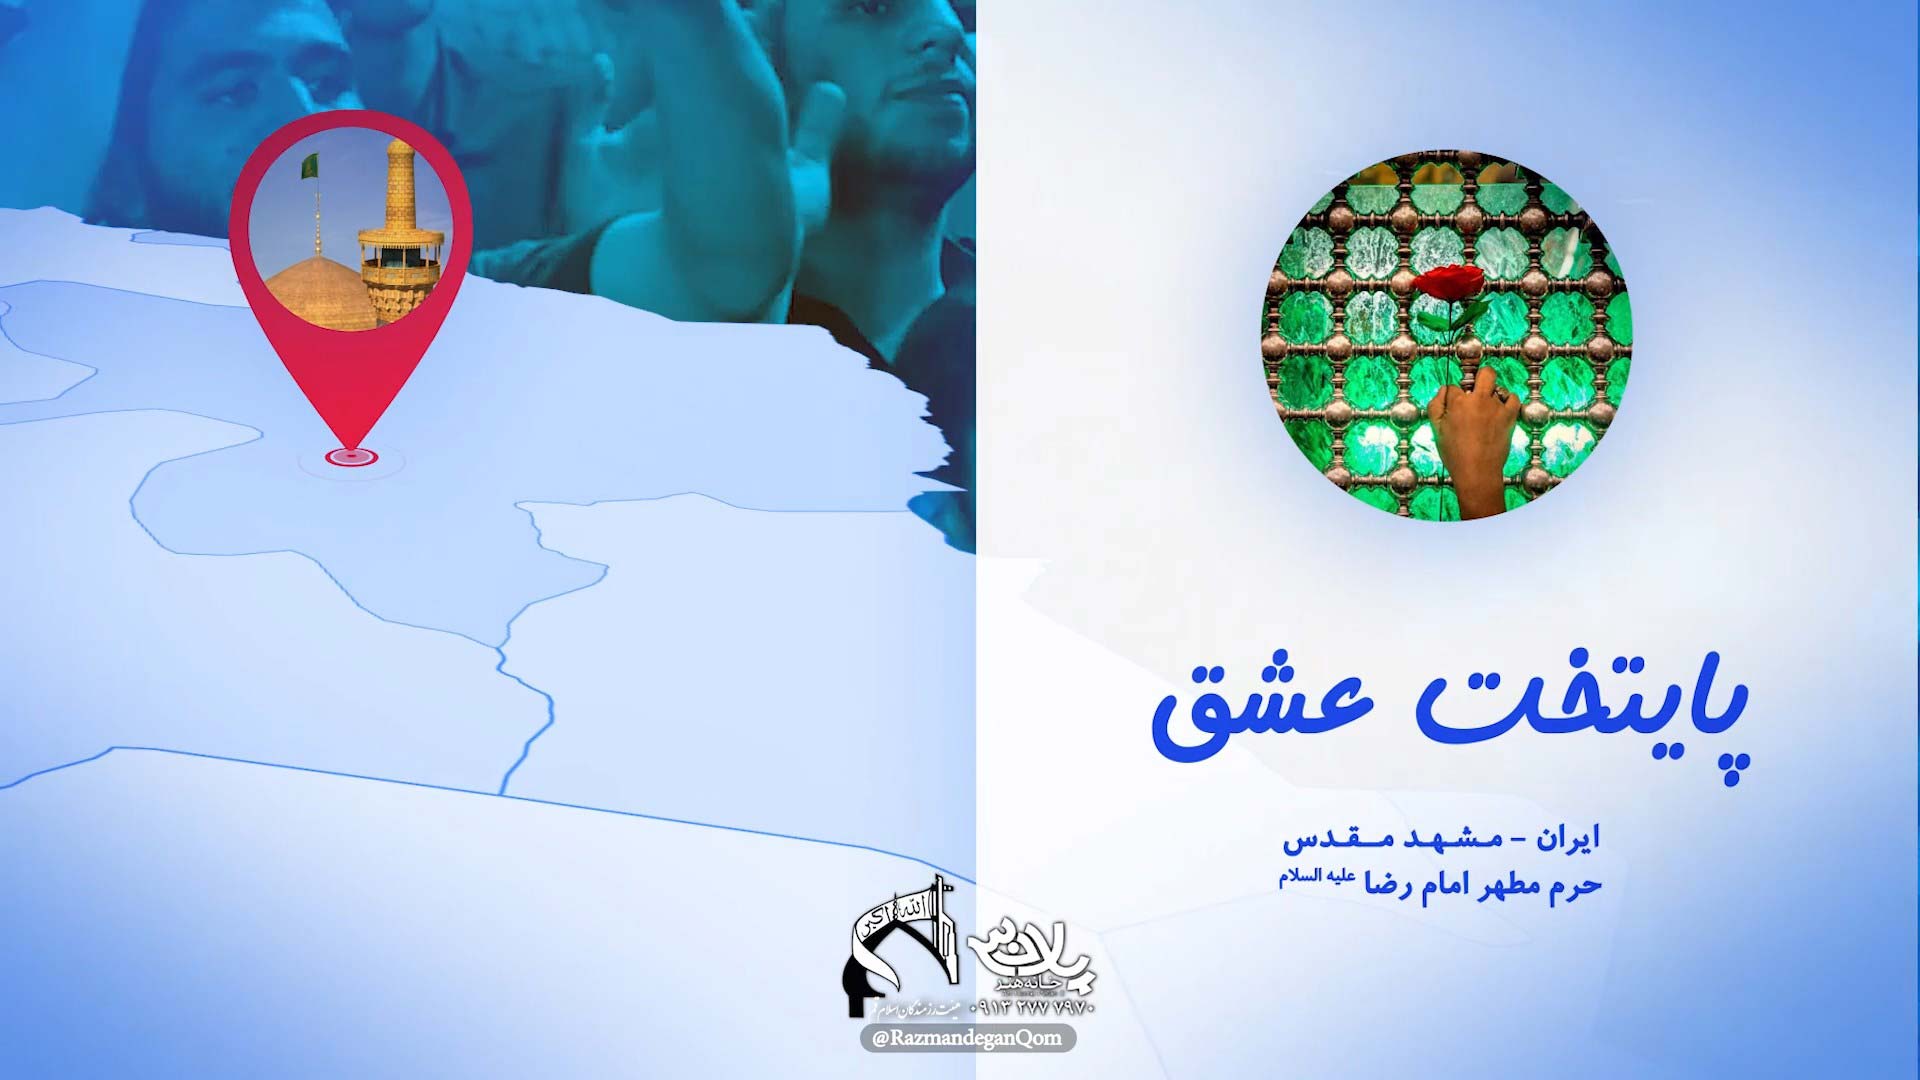 پایتخت عشق ایران حسن عطایی